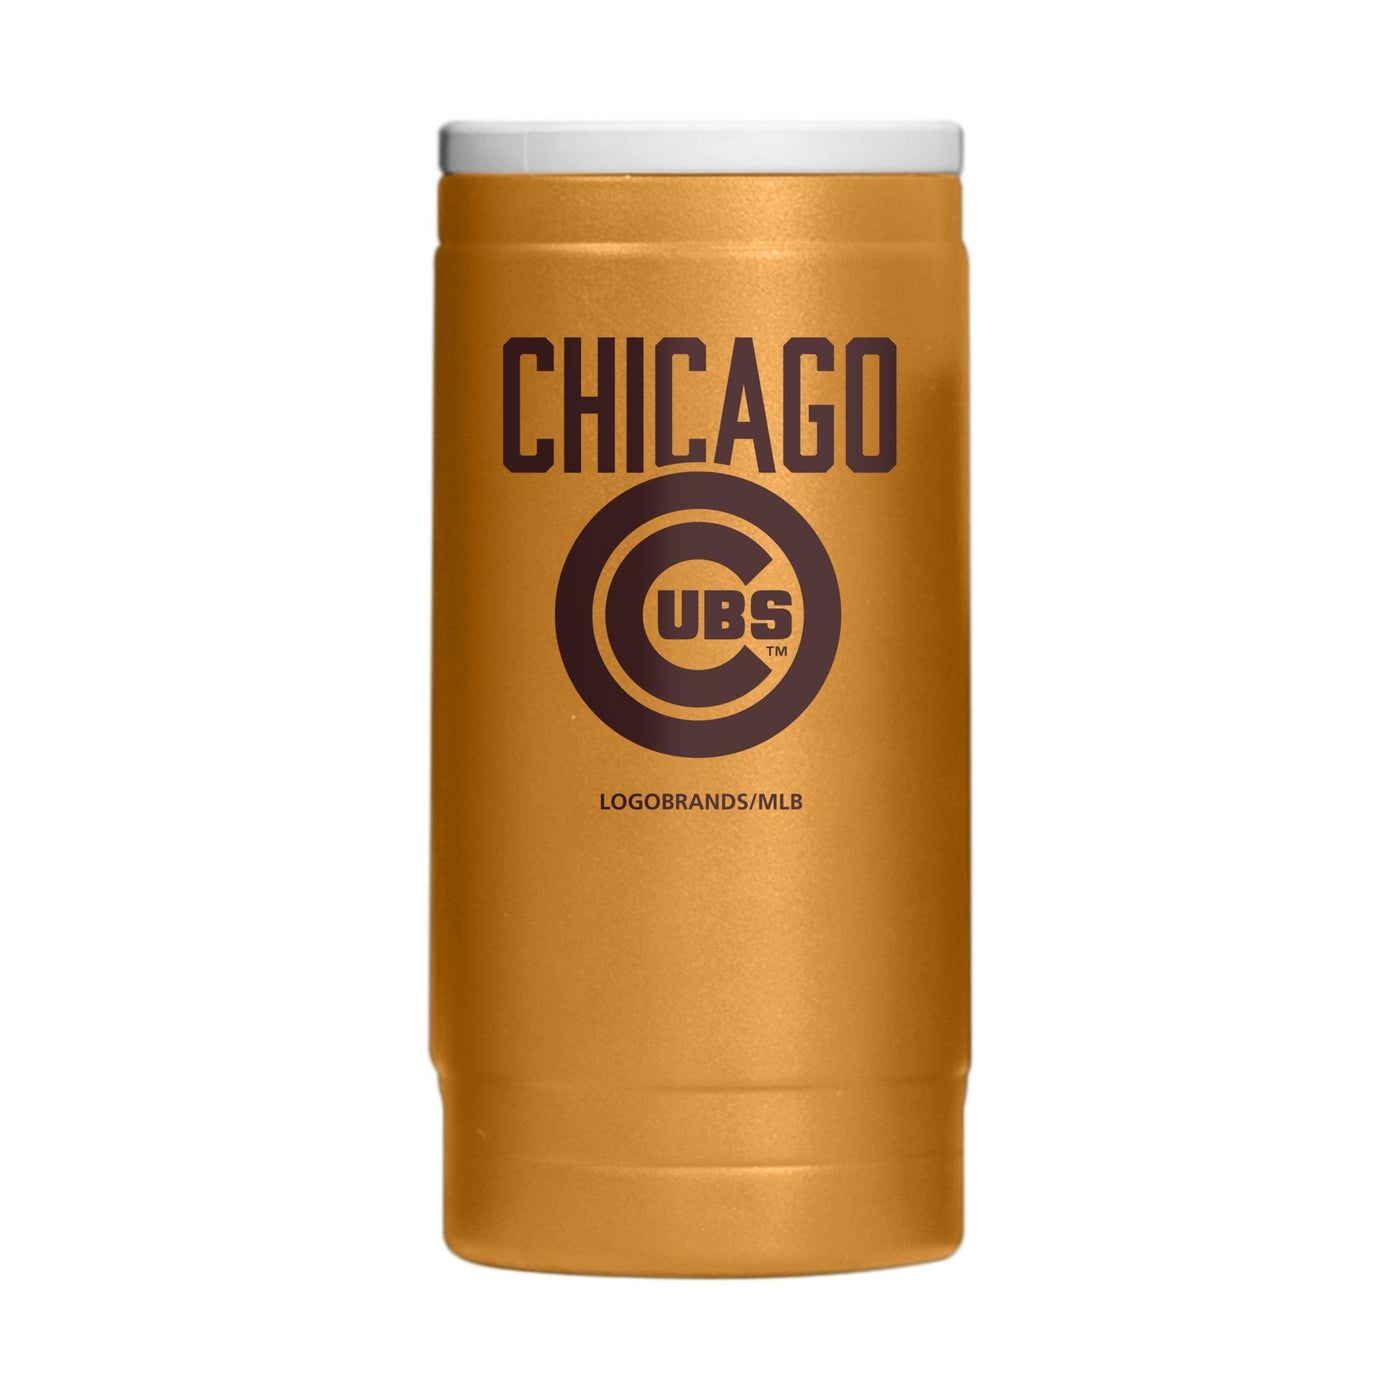 Chicago Cubs Huddle Powder Coat Slim Can Coolie - Logo Brands